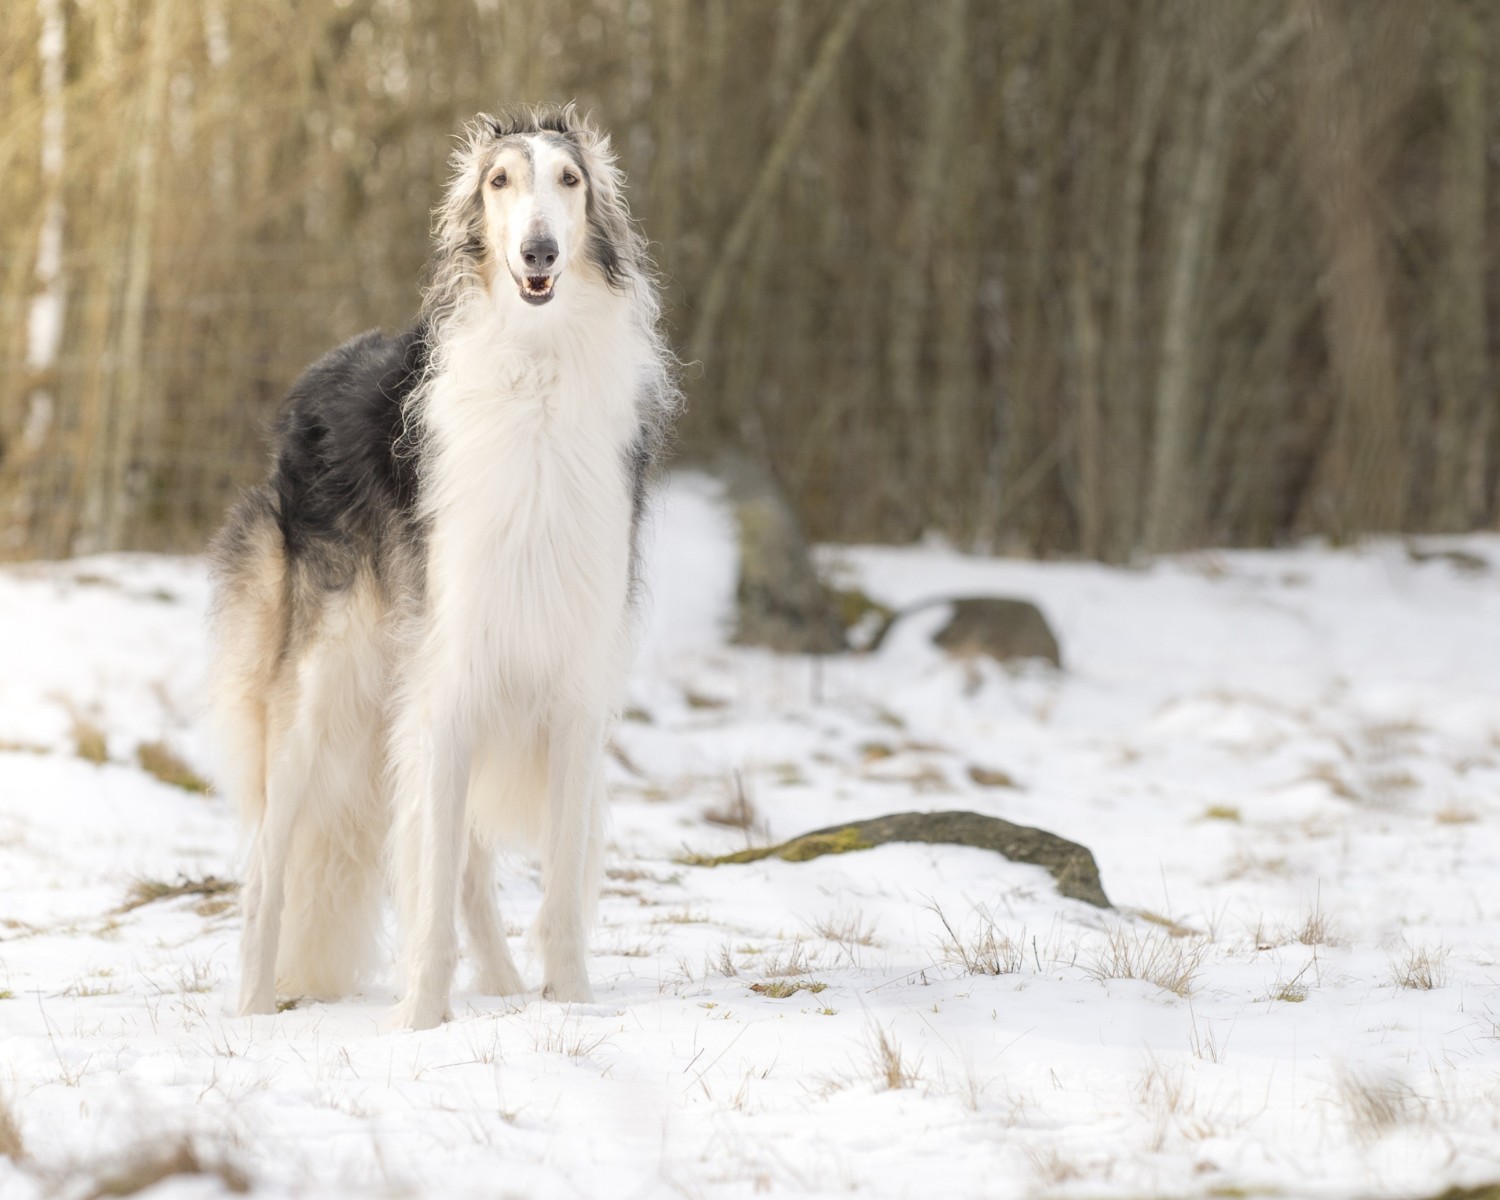 Cães da raça são capazes de aguentar baixas temperaturas graças a sua resistência ao frio (Foto: Canva/Creative Commons)